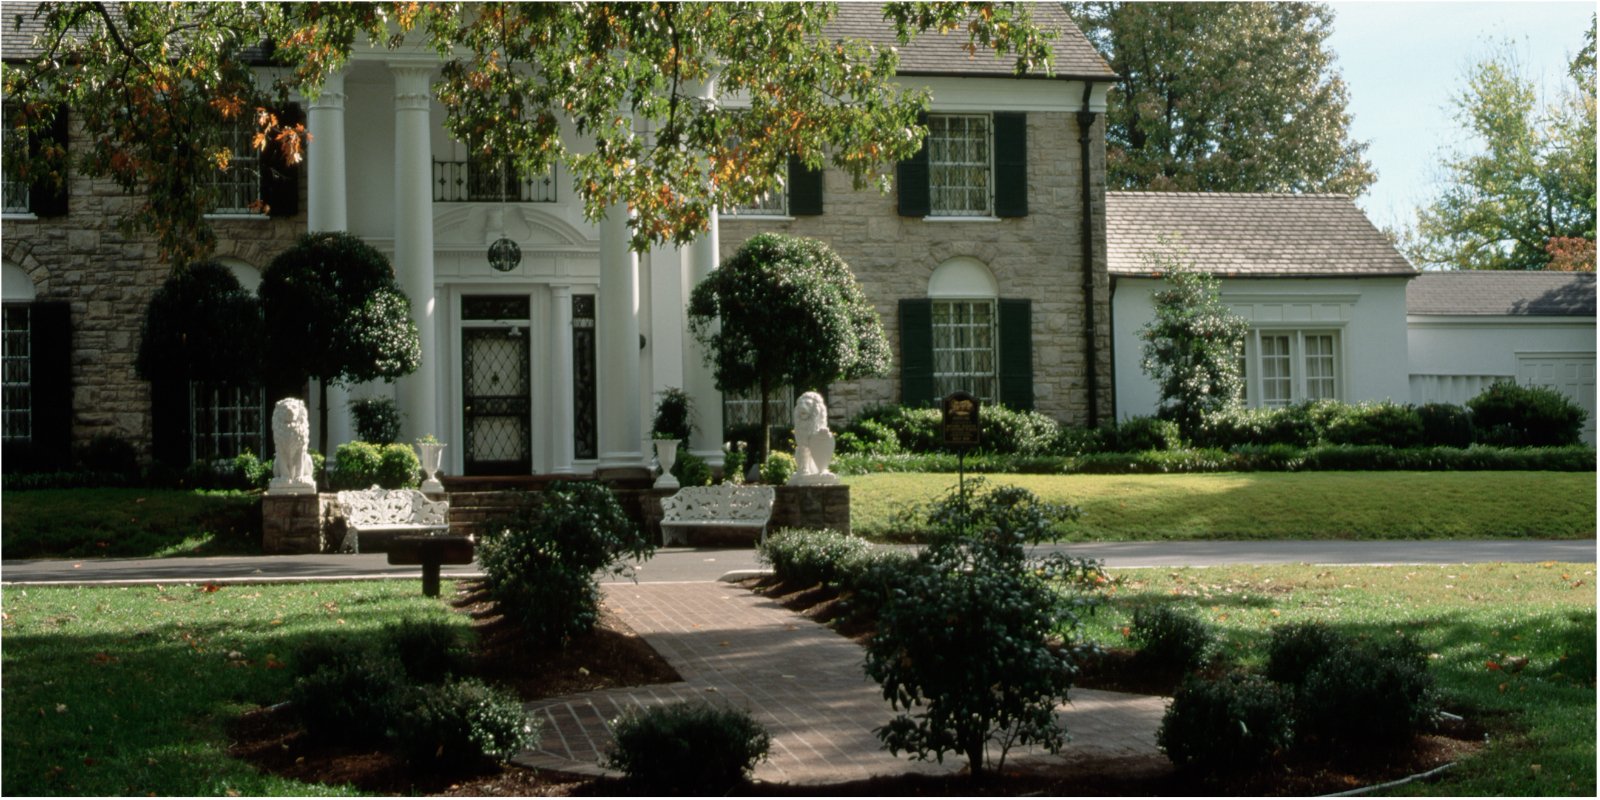 Elvis Presley's Graceland Mansion photographed in 1996.